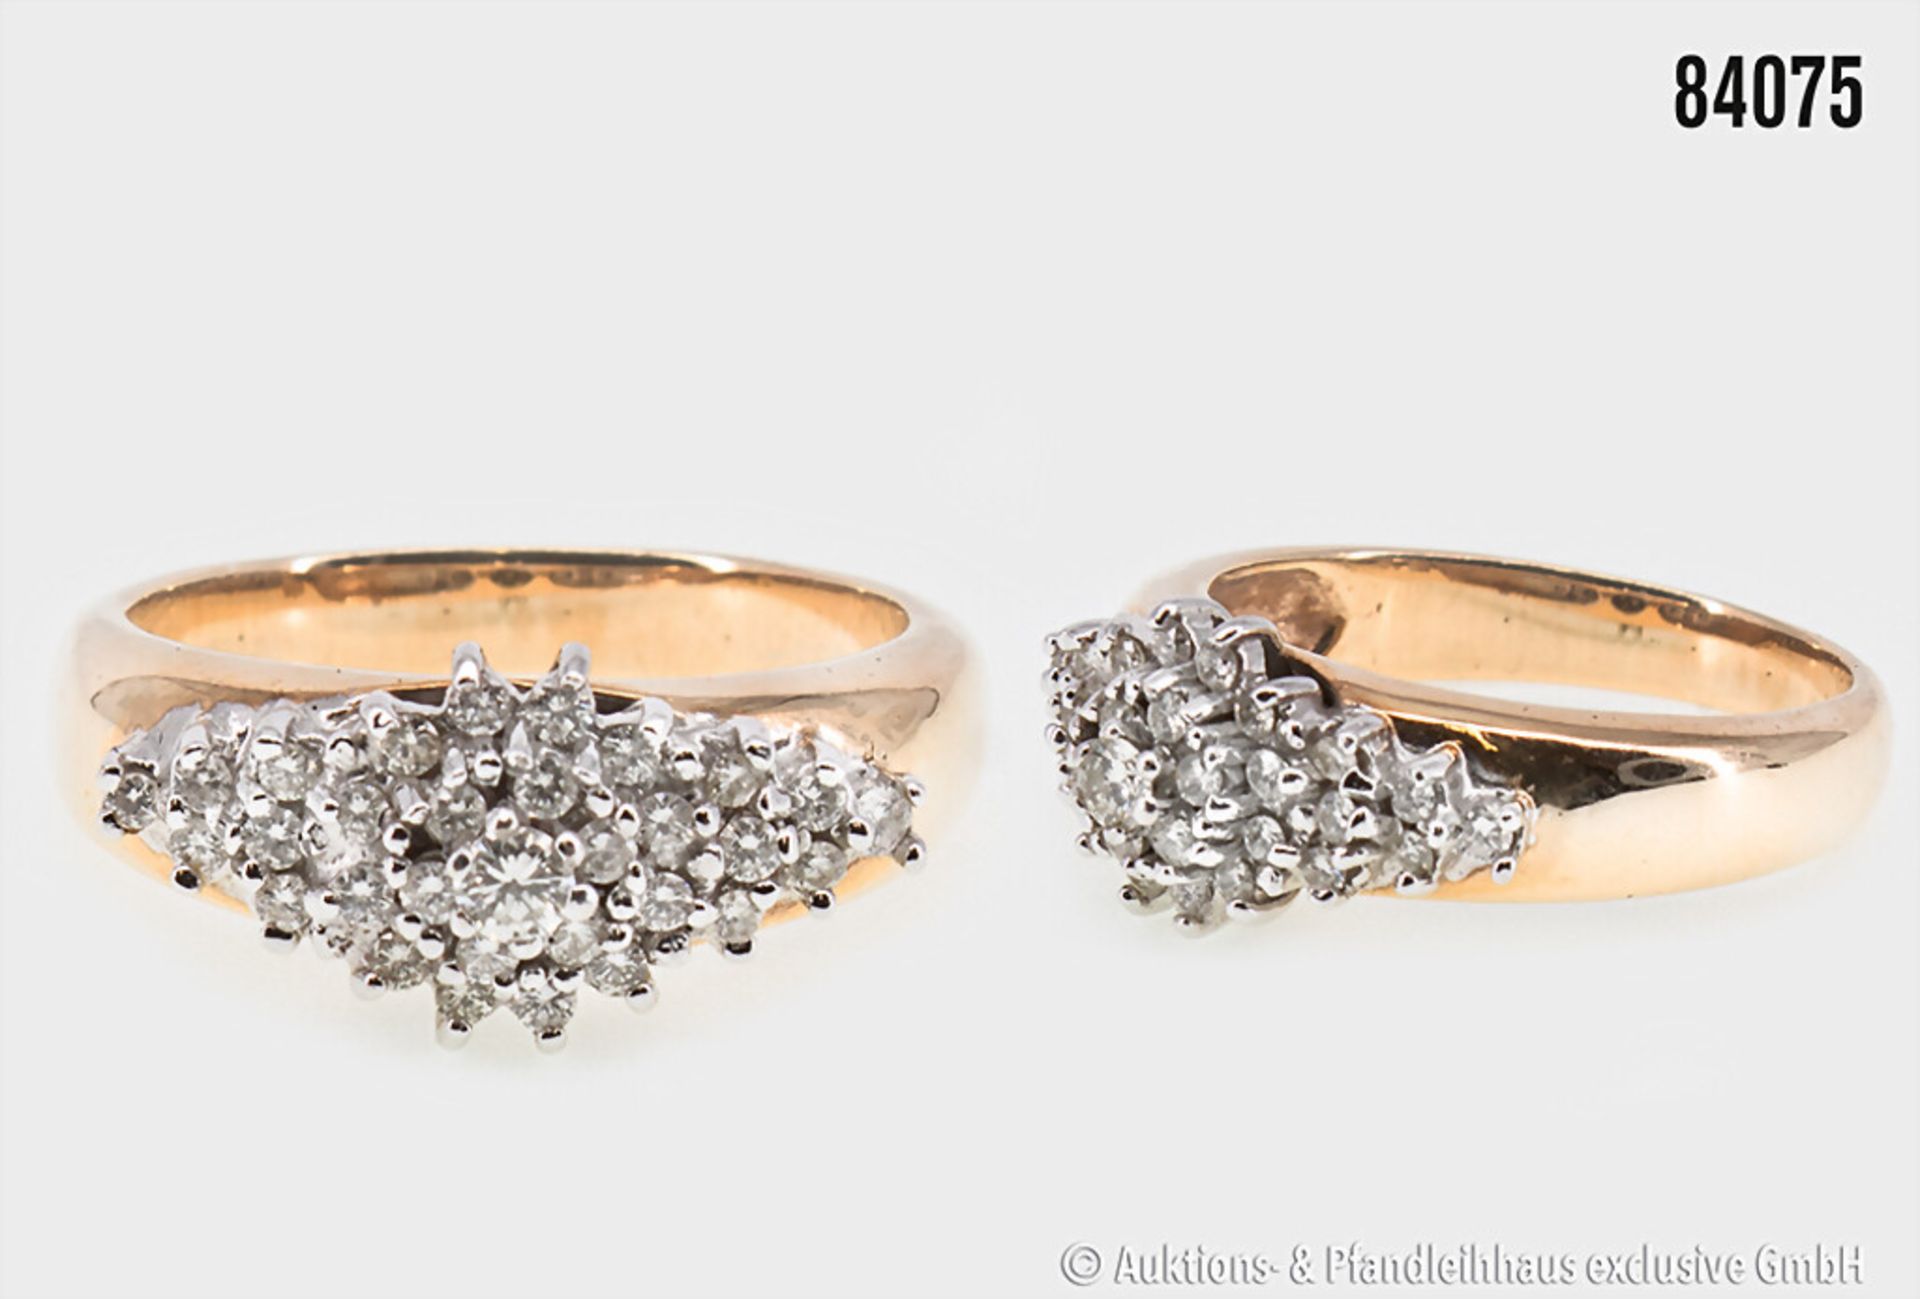 Ring, 585er Gold, mit Brillanten, ca. 0,6 ct, w - top crystal, 7,40 g, Ringgröße ca. ...